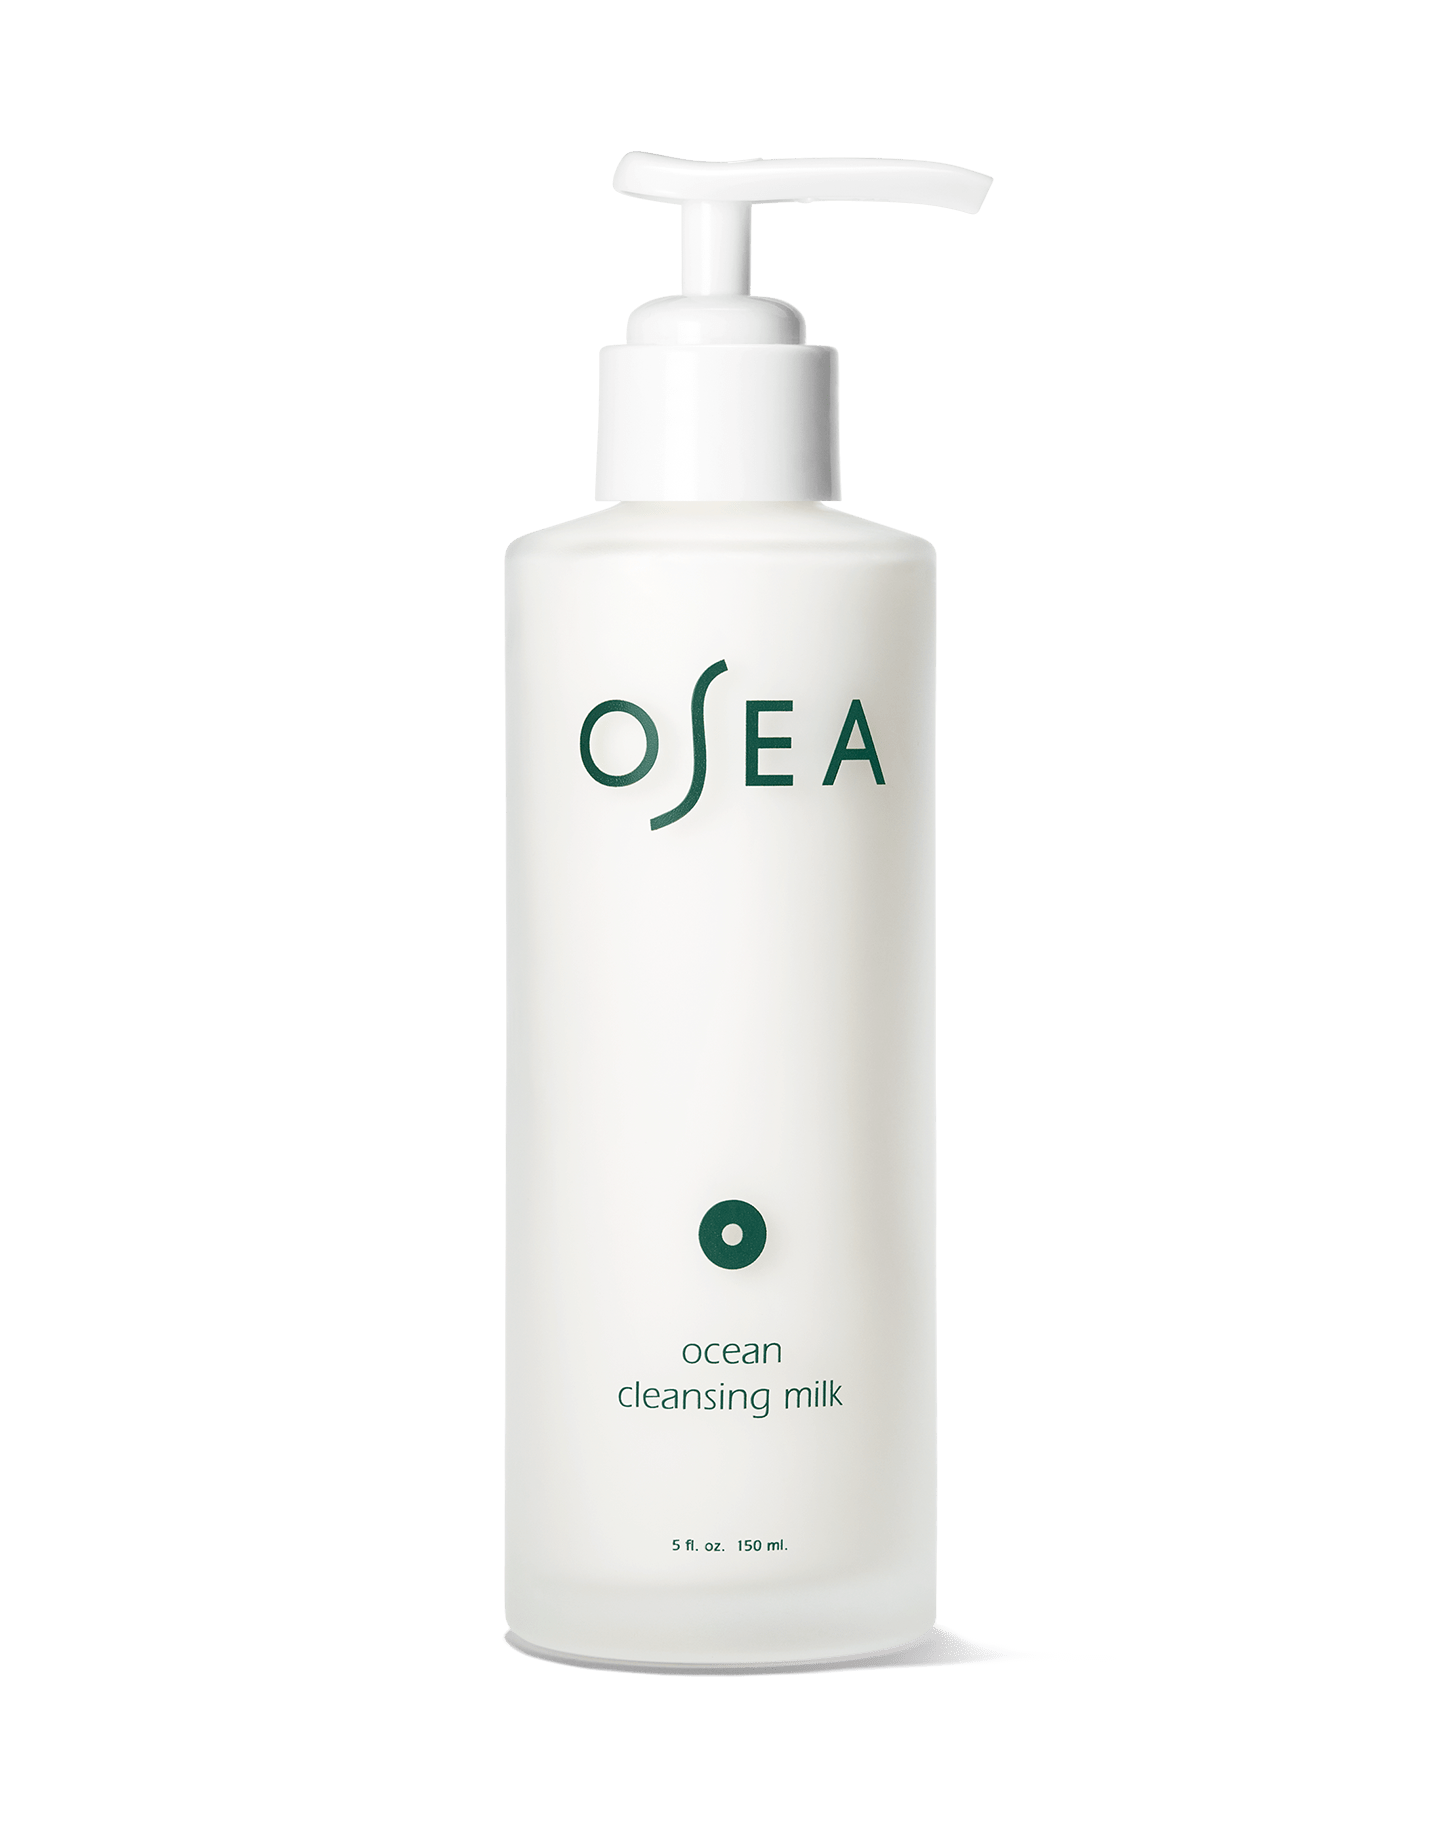 osea / ocean cleansing milk